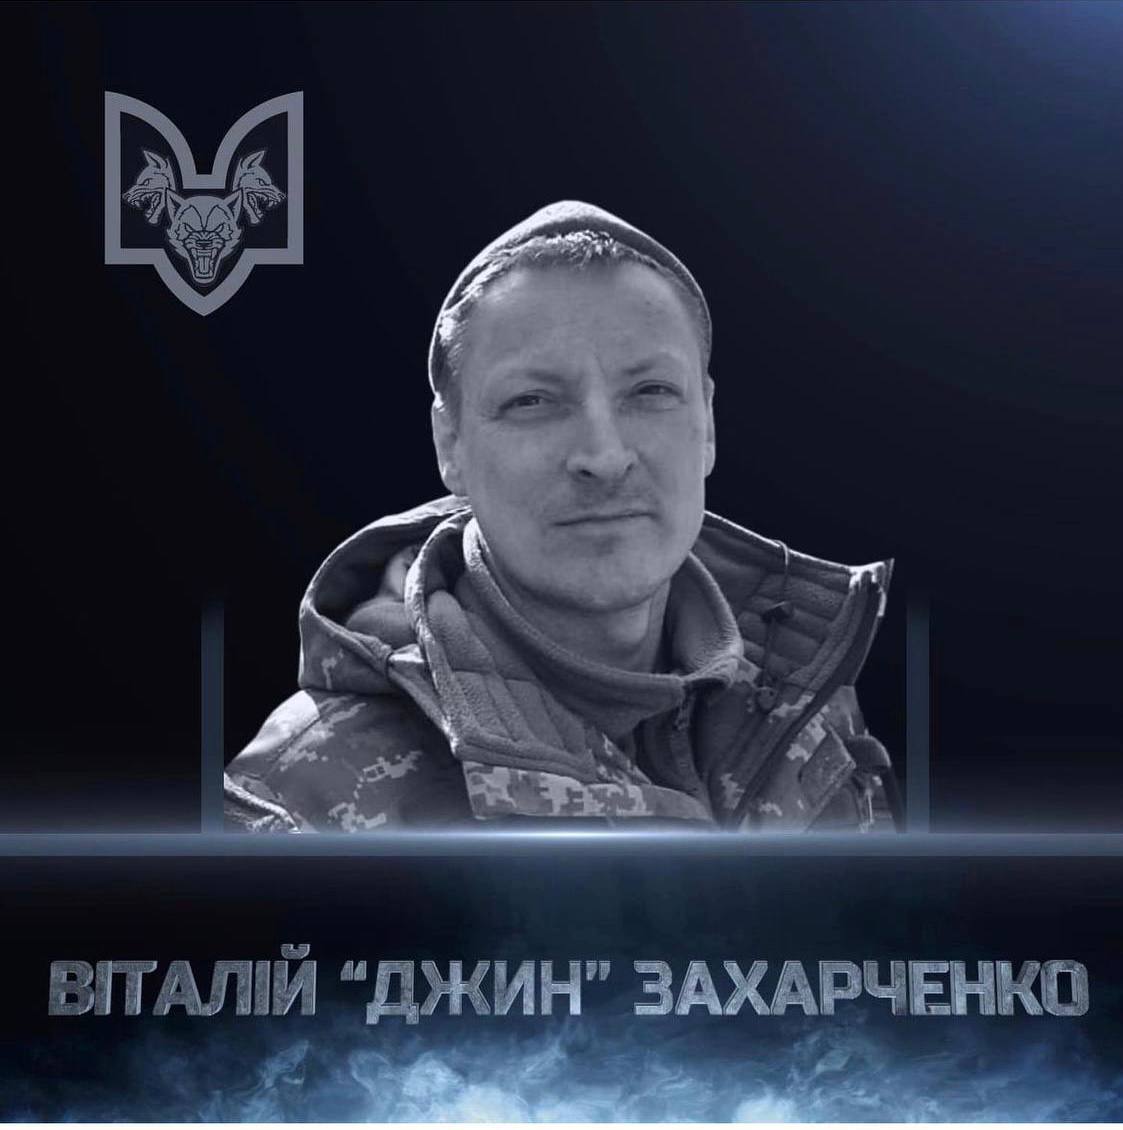 Боец из Бердянска героически погиб во время выполнения боевого задания на фронте